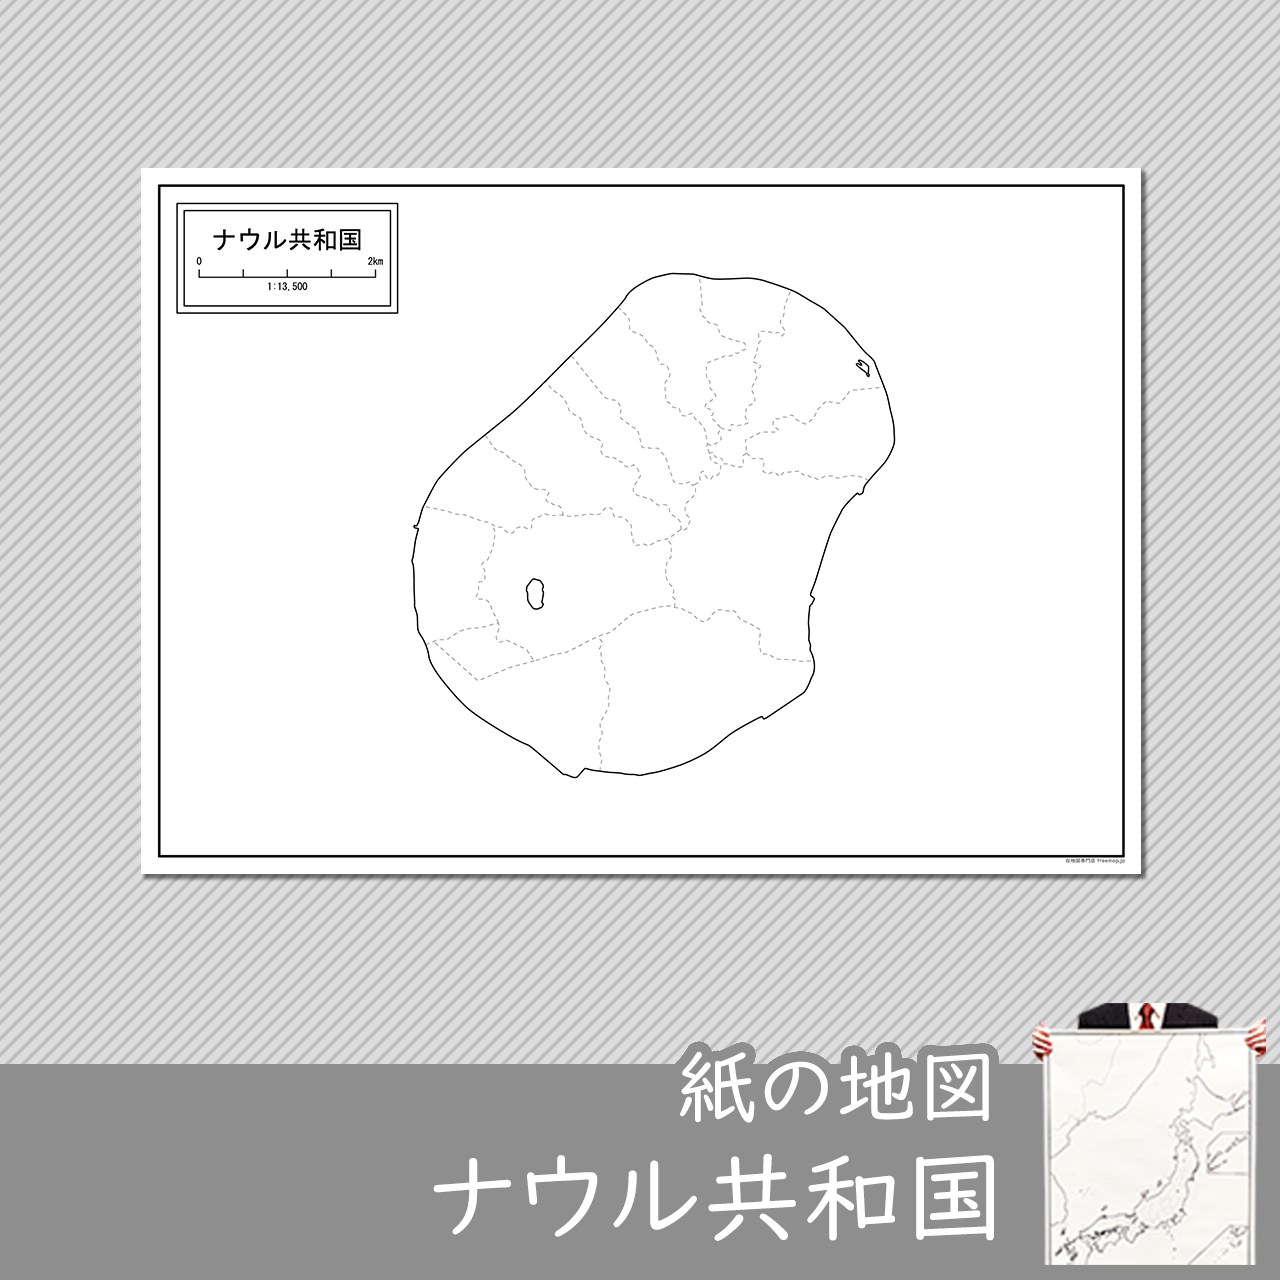 ナウル共和国の紙の白地図のサムネイル